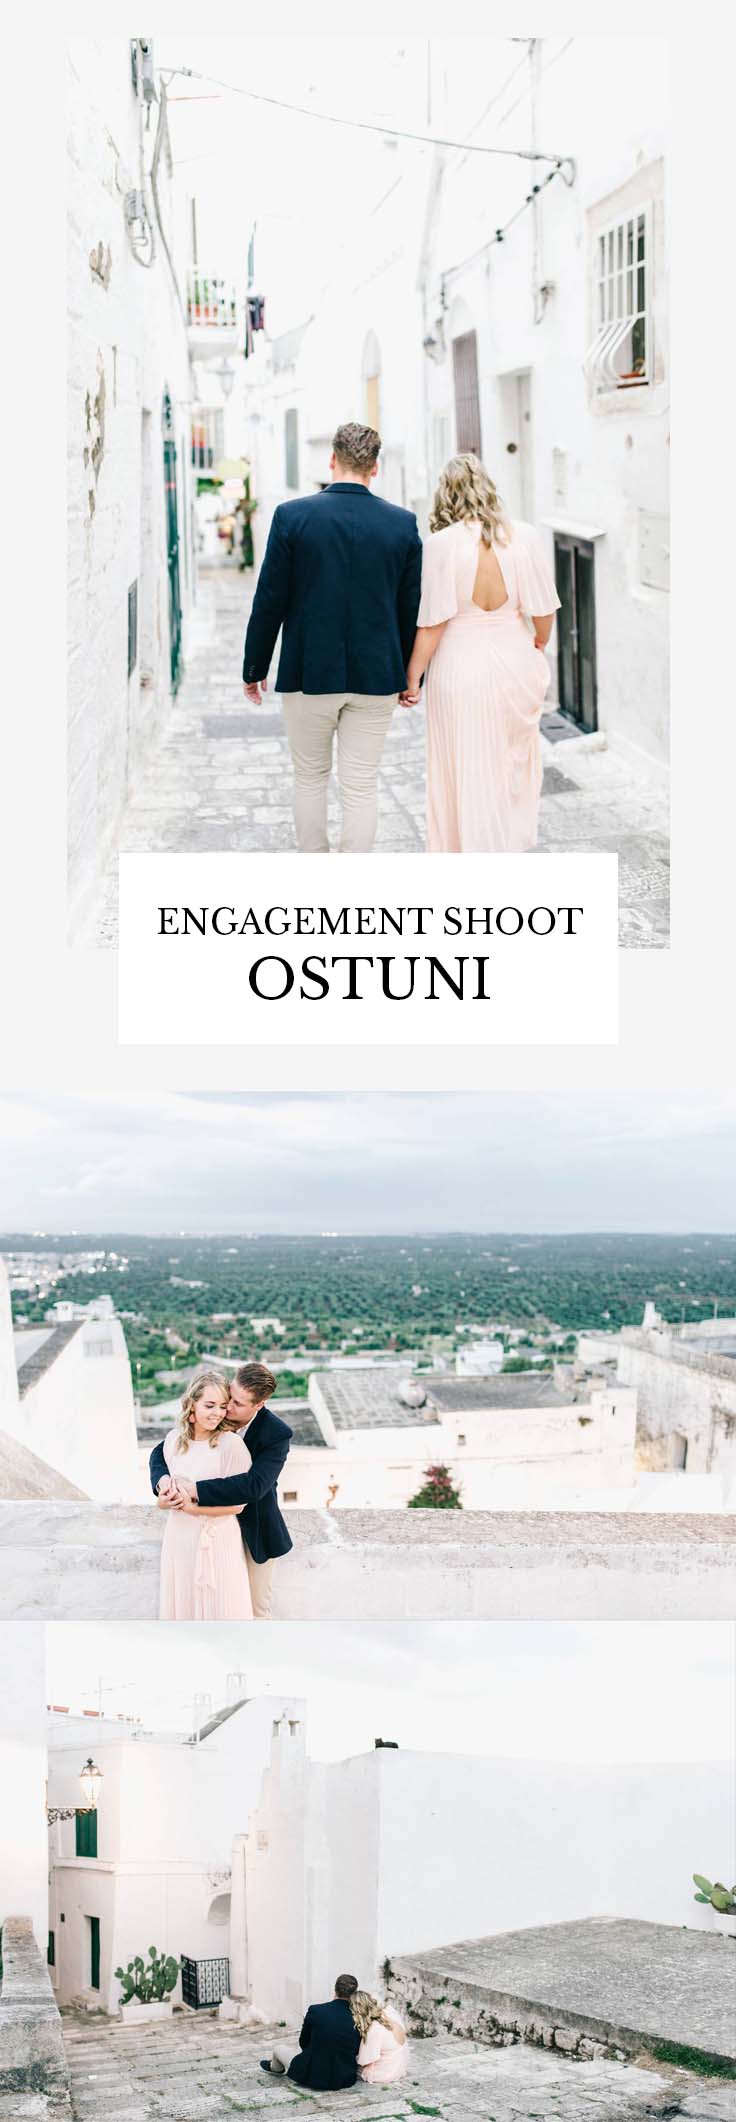 Engagement shoot Ostuni